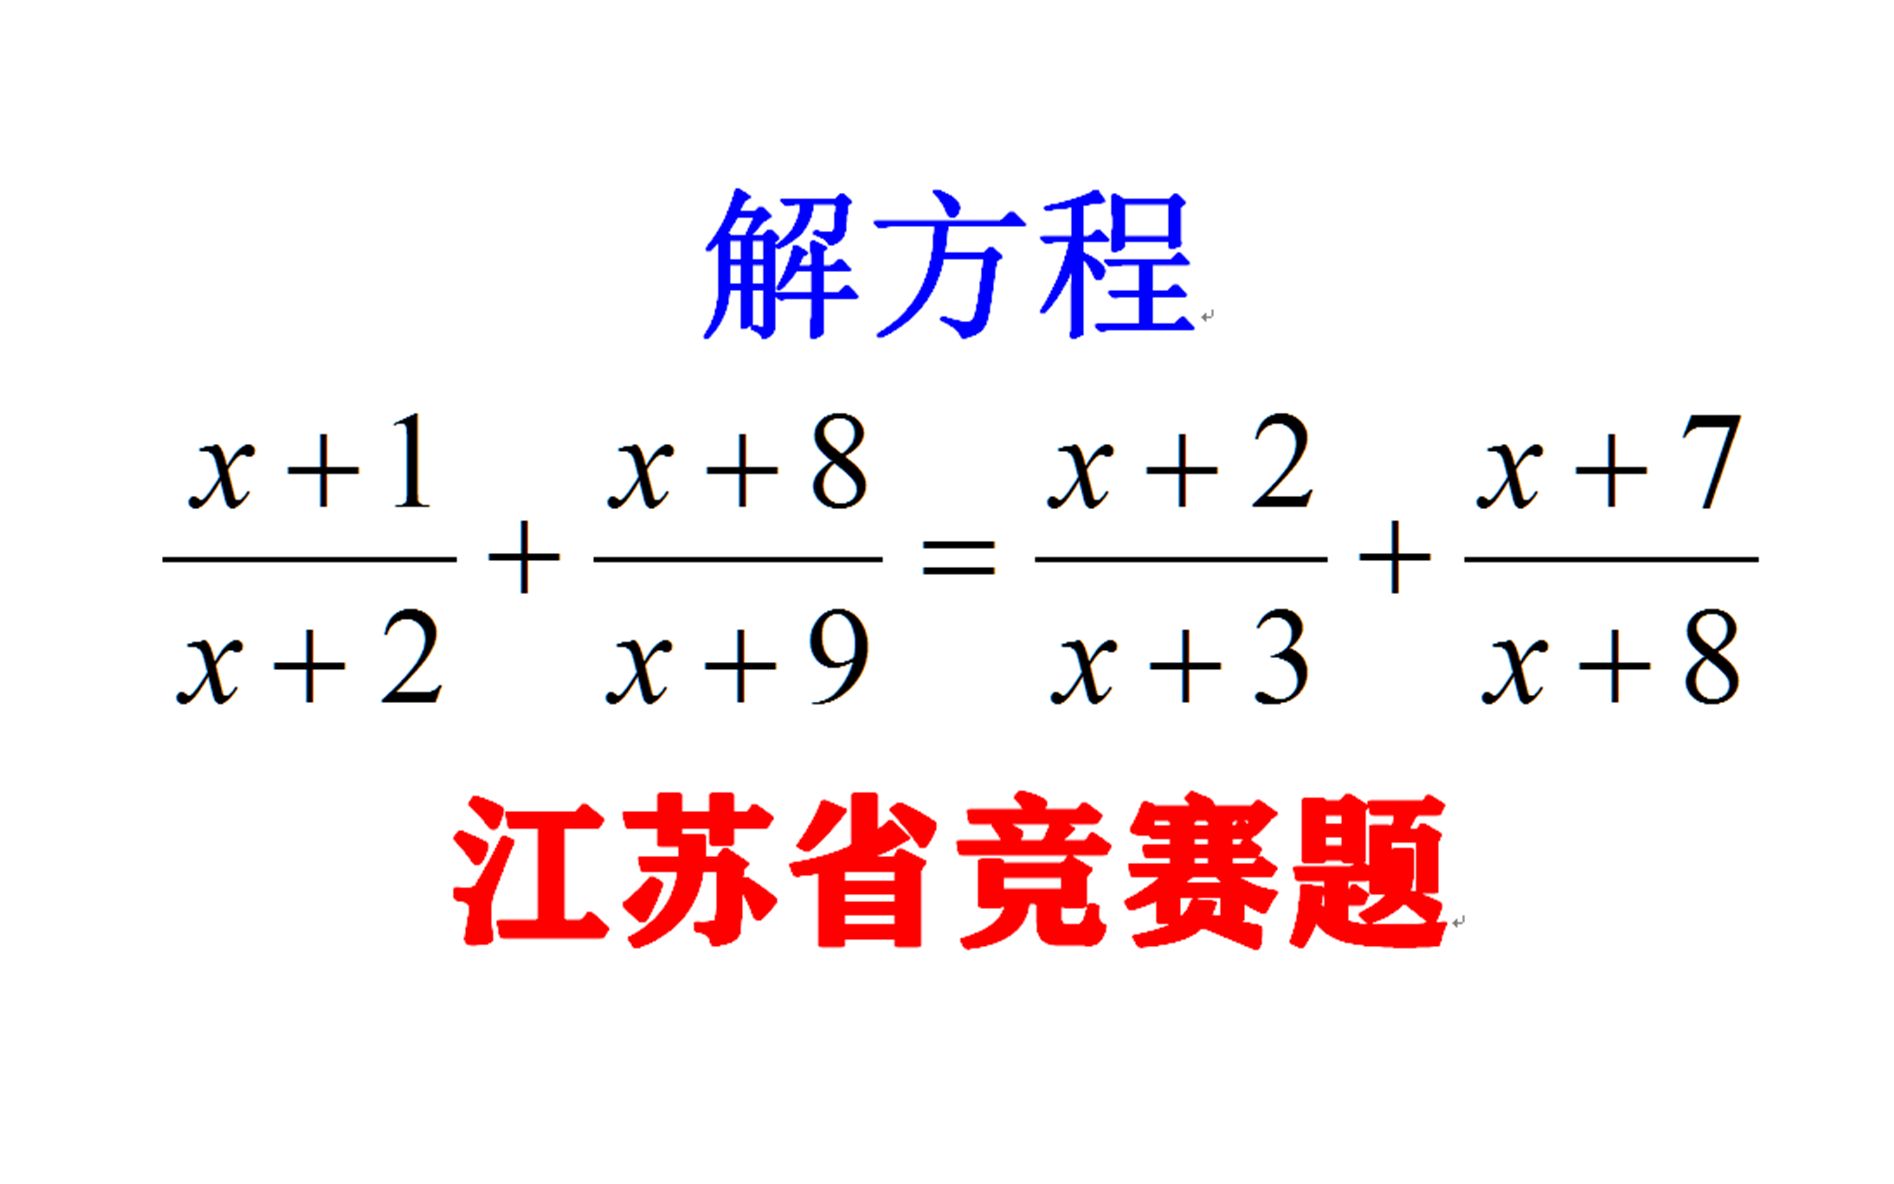 江苏省竞赛题，复杂的方程，如何简单解题？完全看你的本事和智力